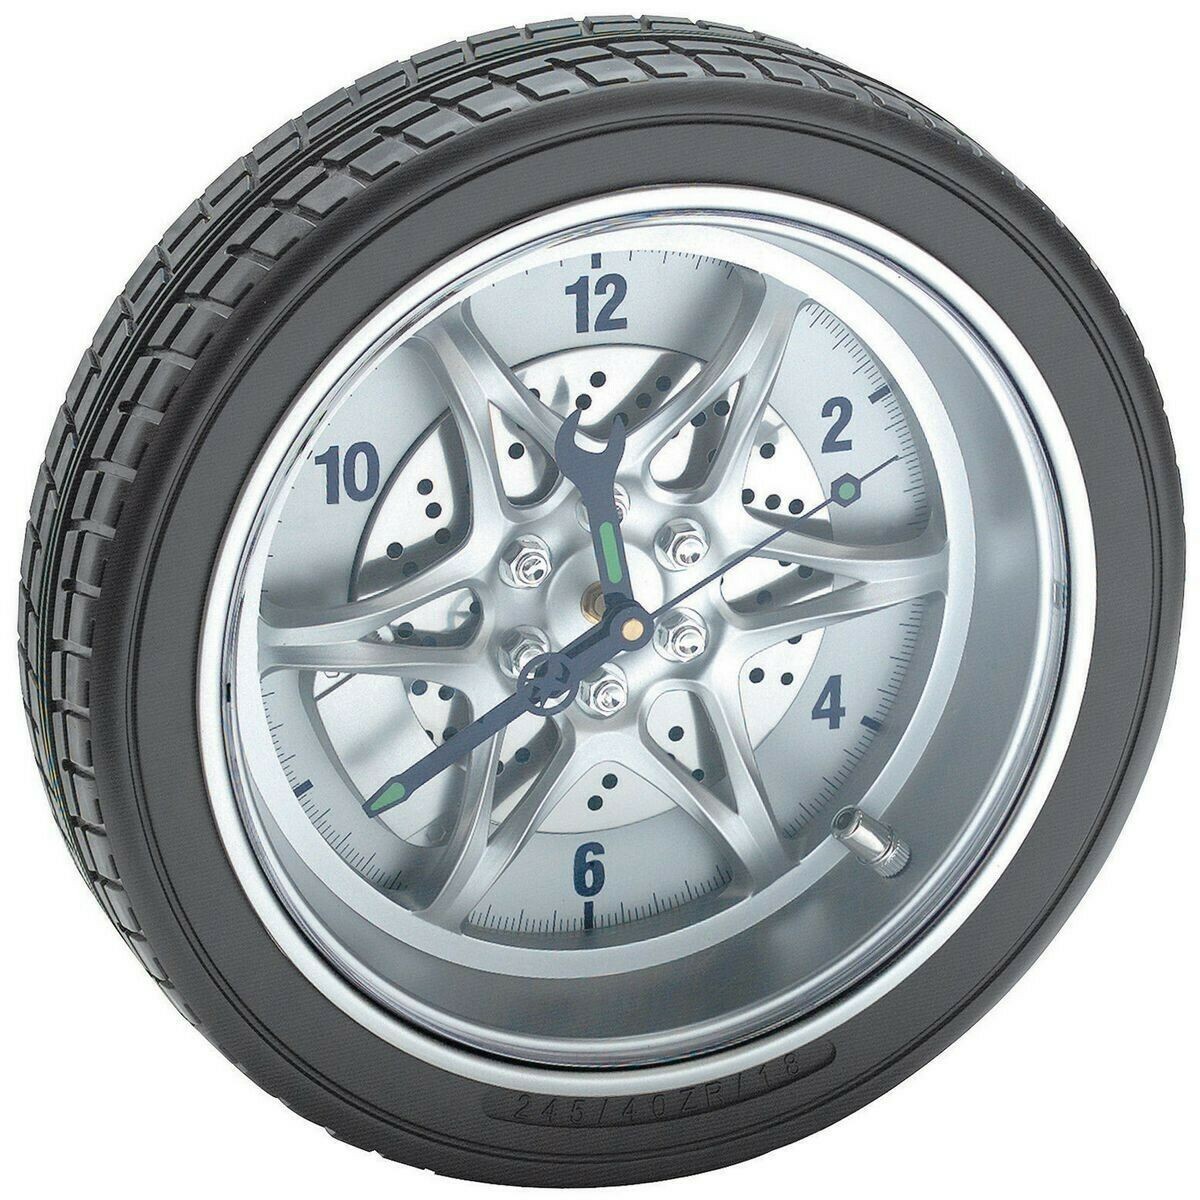 14" Tire rim clock